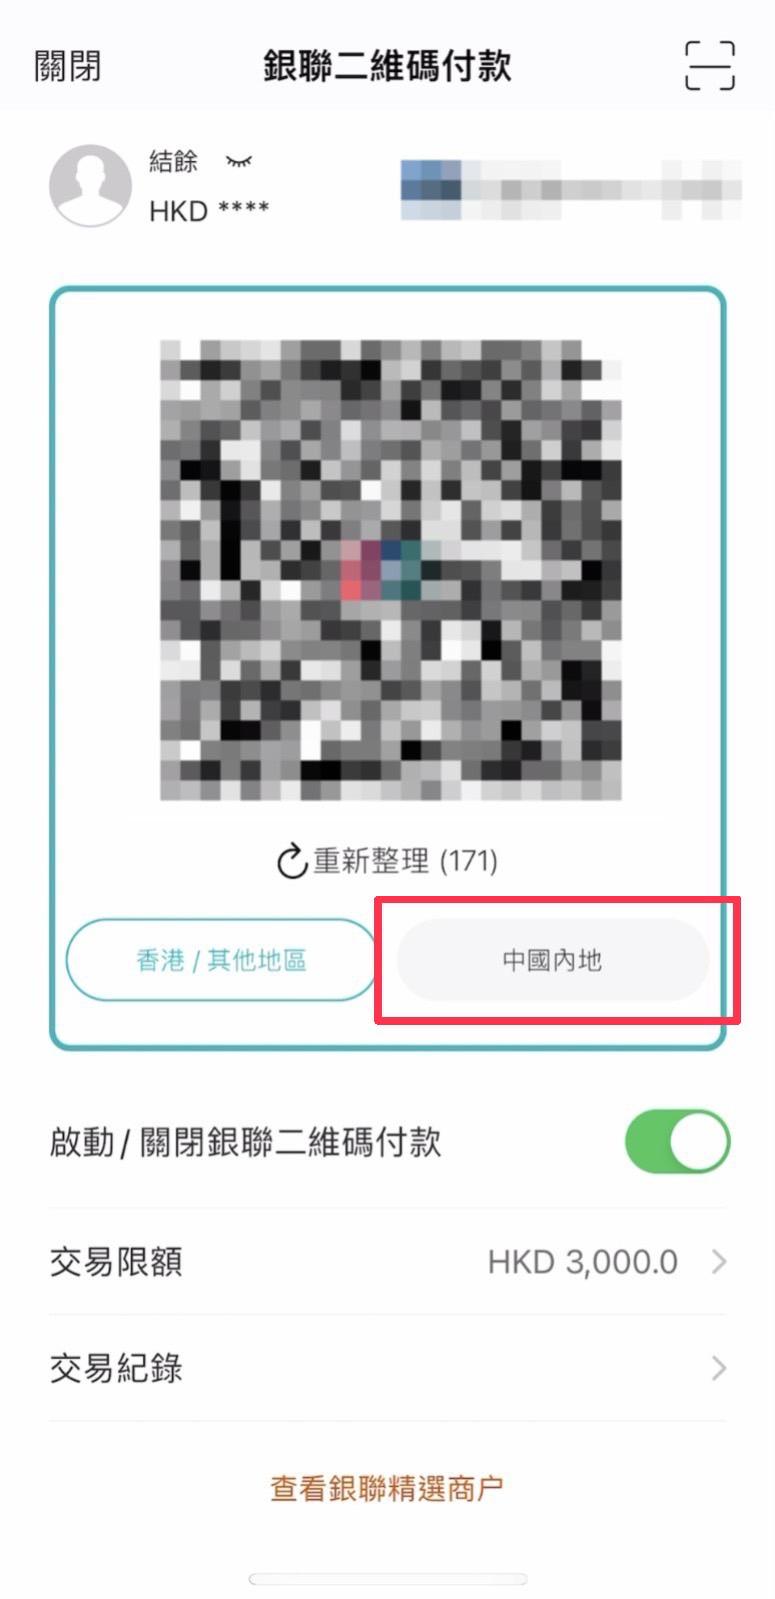 8. 手机画面将出现支付QR Code，谨记在内地消费时要点选「中国内地」钱包